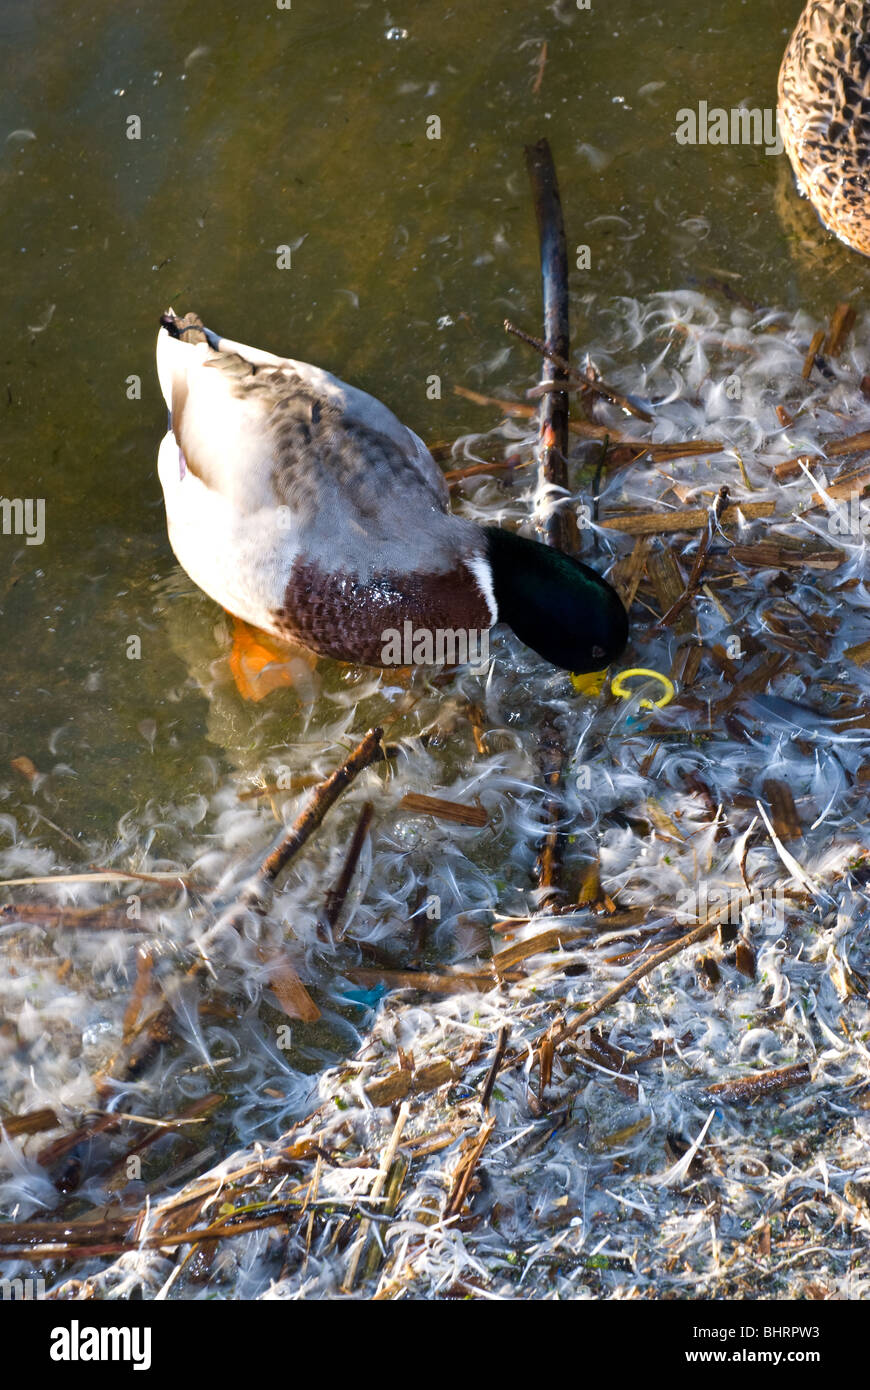 Canard colvert mâle adultes nourrir le long des rives d'un lac avec des déchets de plastique et autres détritus. Banque D'Images